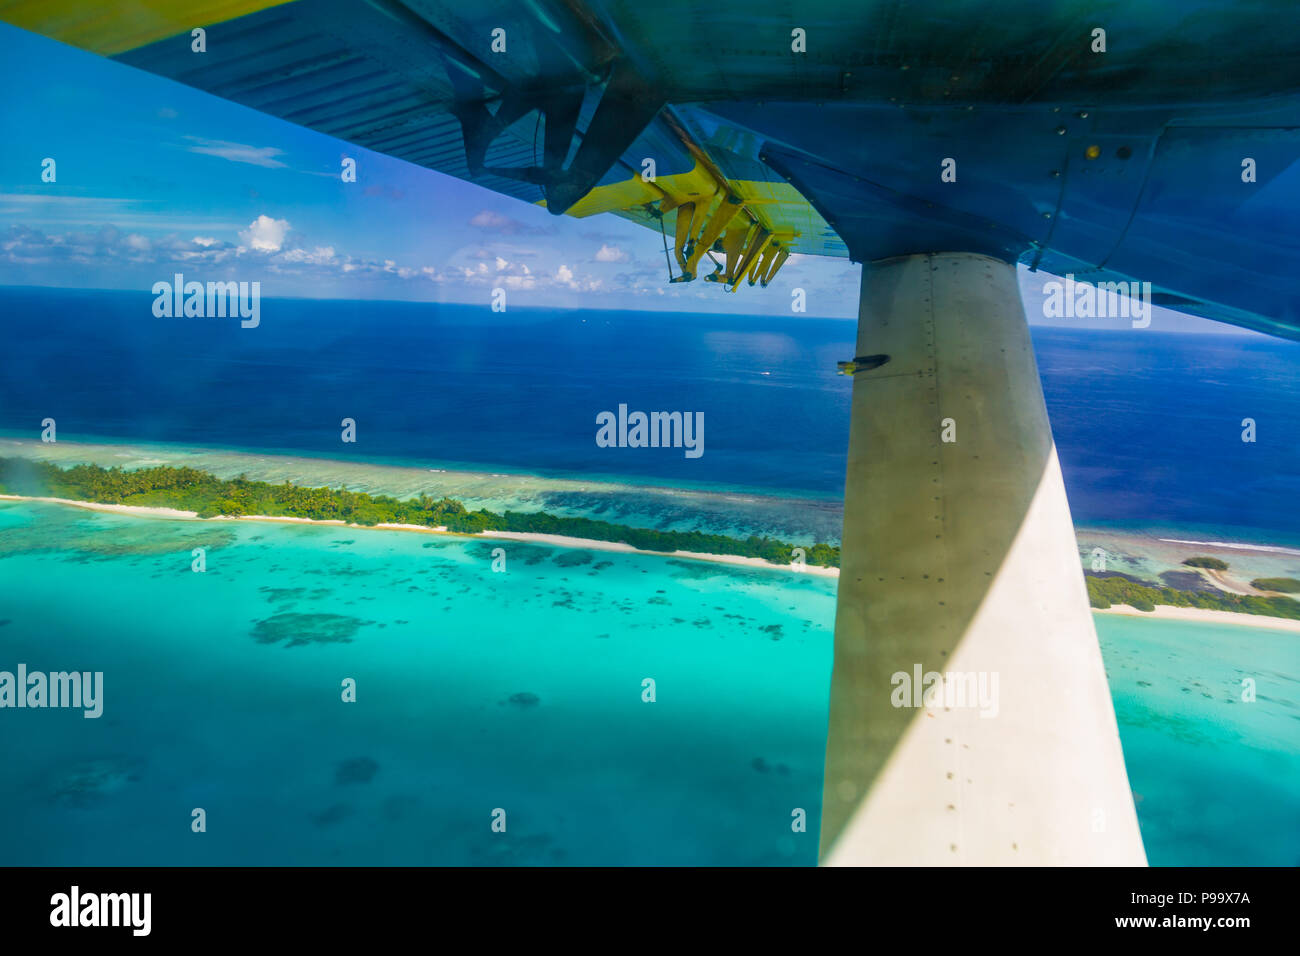 Incroyable Vue aérienne de Maldives island et plage. Vue d'avion ou de drone d'atolls et des îles et de la mer Banque D'Images